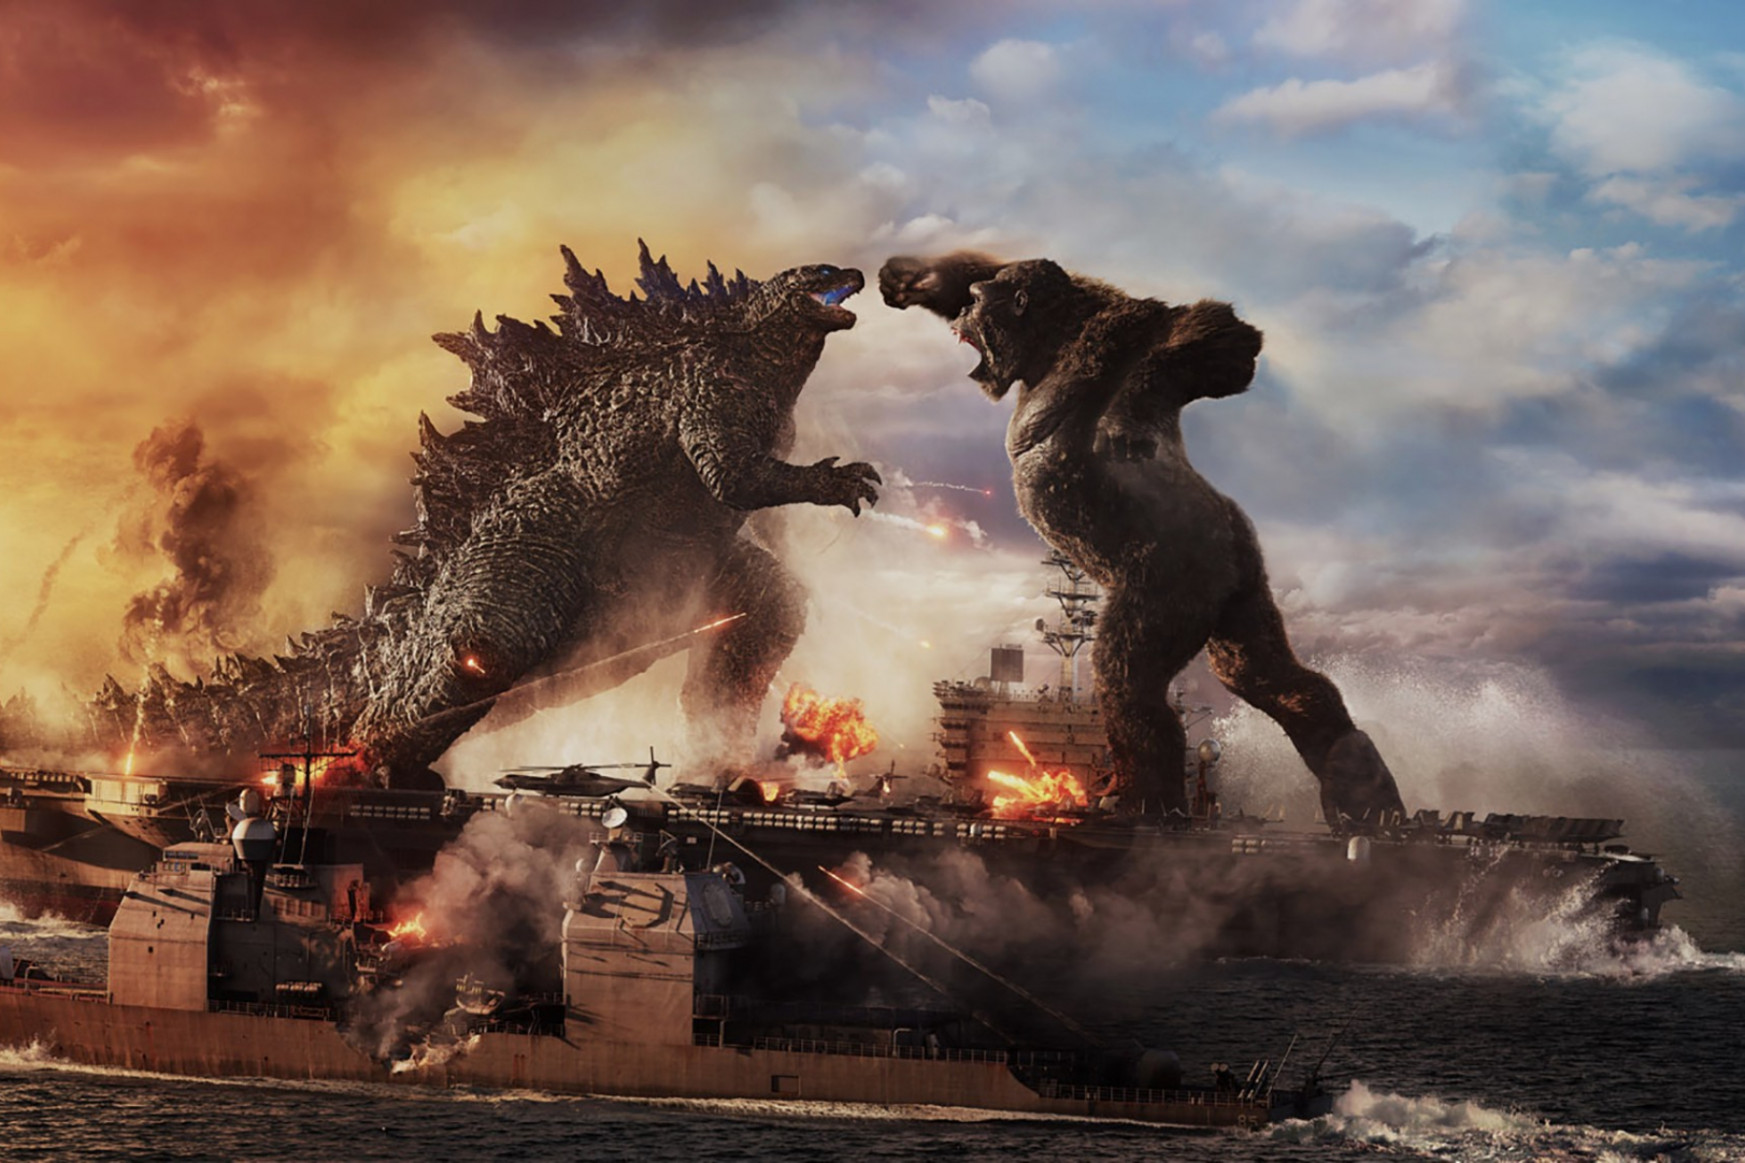 A Godzilla Kong ellen a járványév legsikeresebb mozifilmje